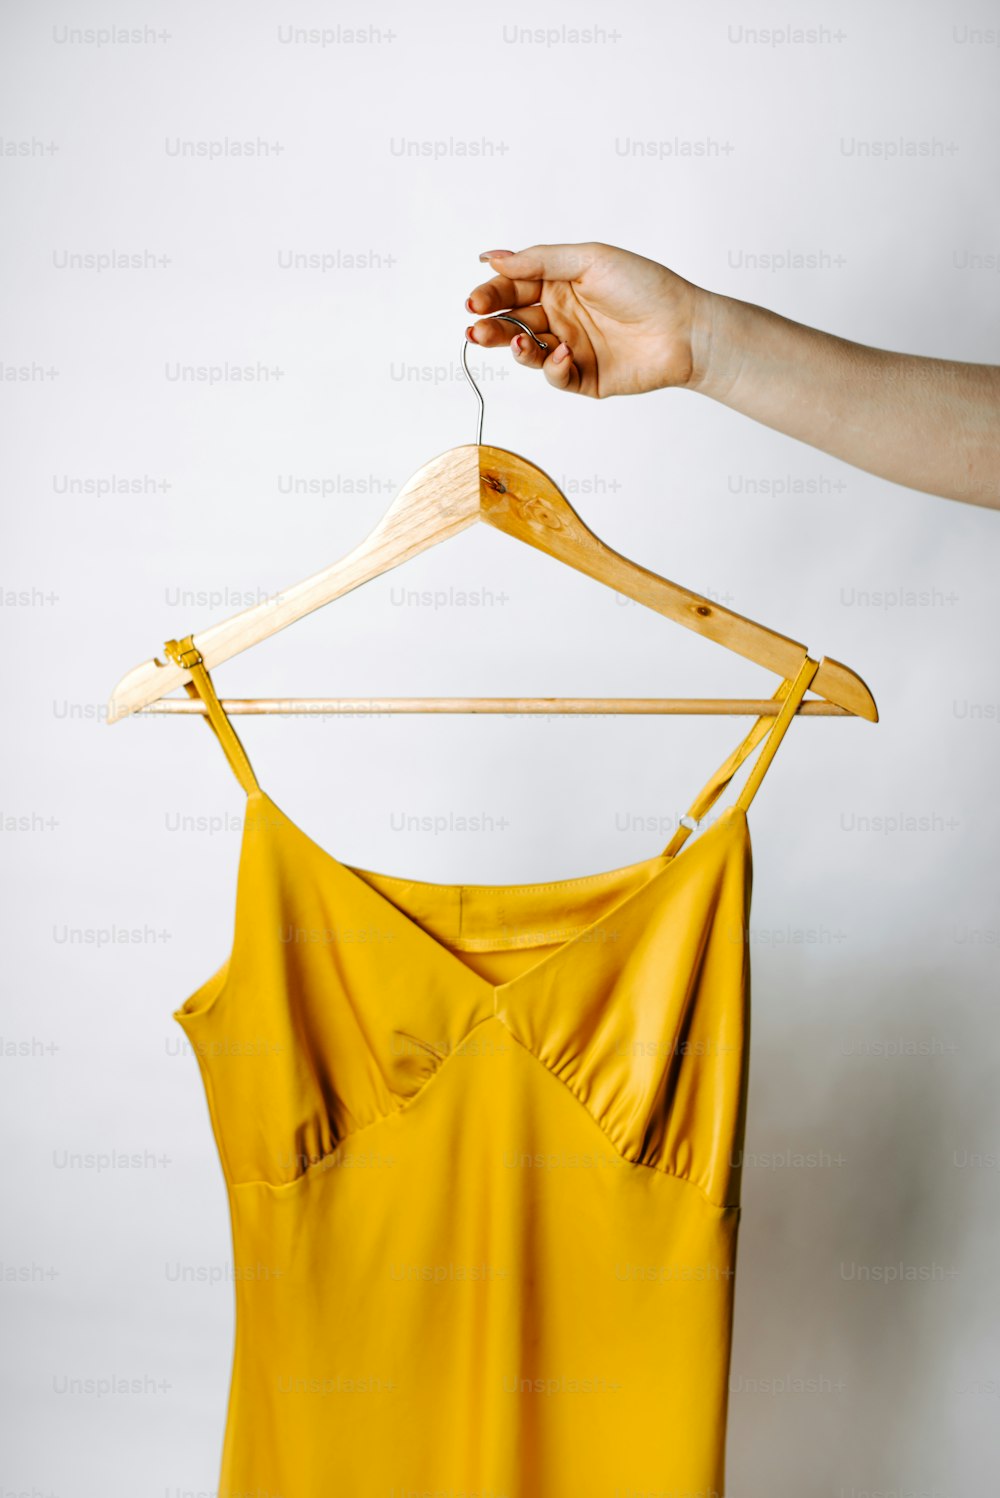 La mano de una mujer sosteniendo una parte superior amarilla en una percha